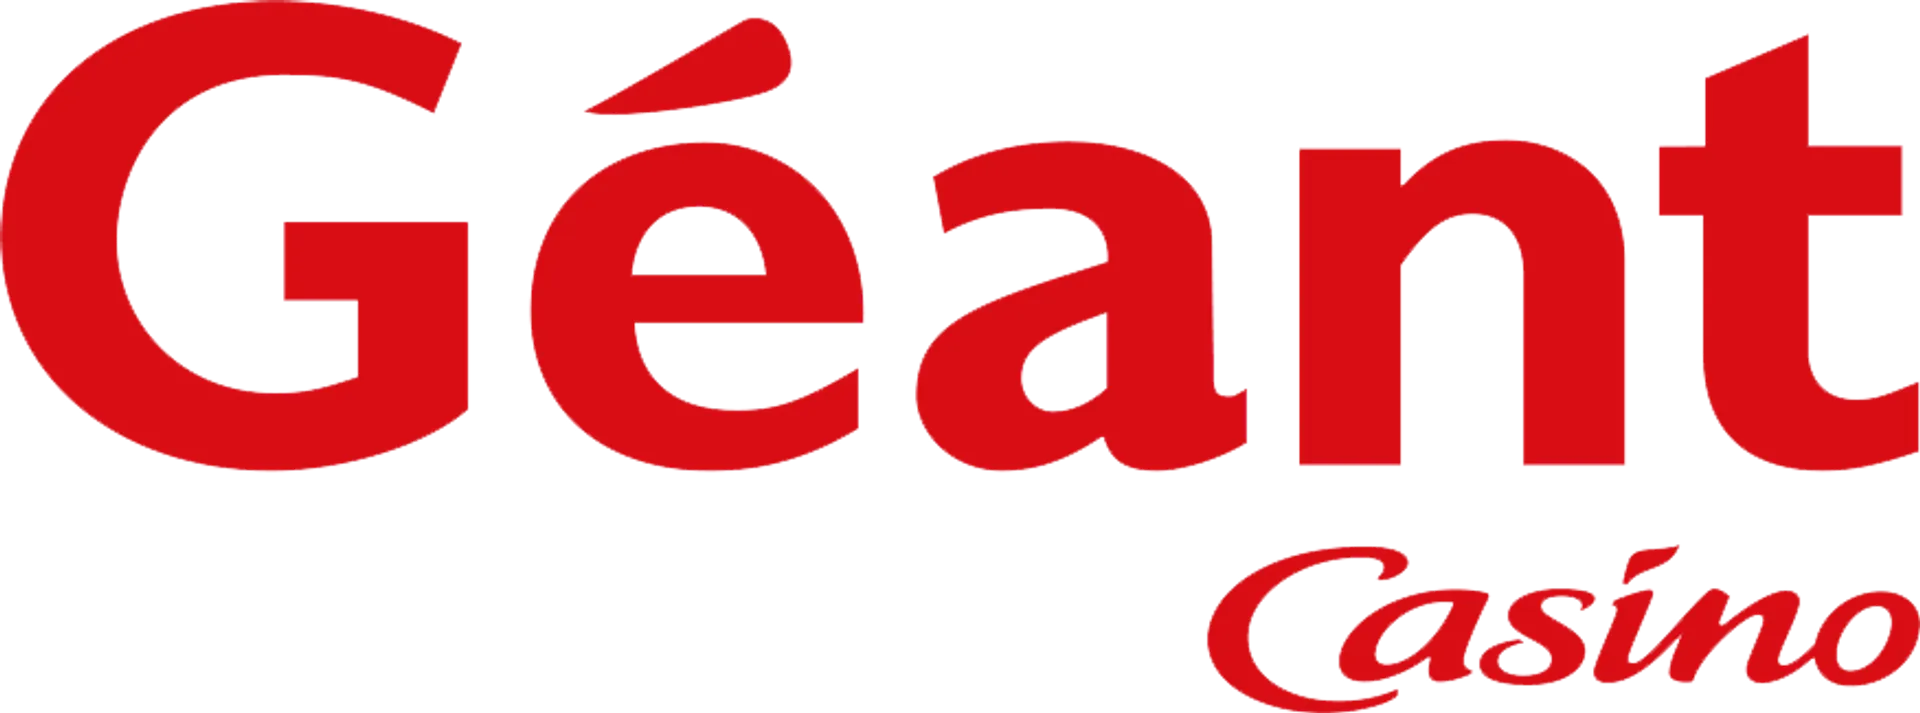 GÉANT CASINO logo